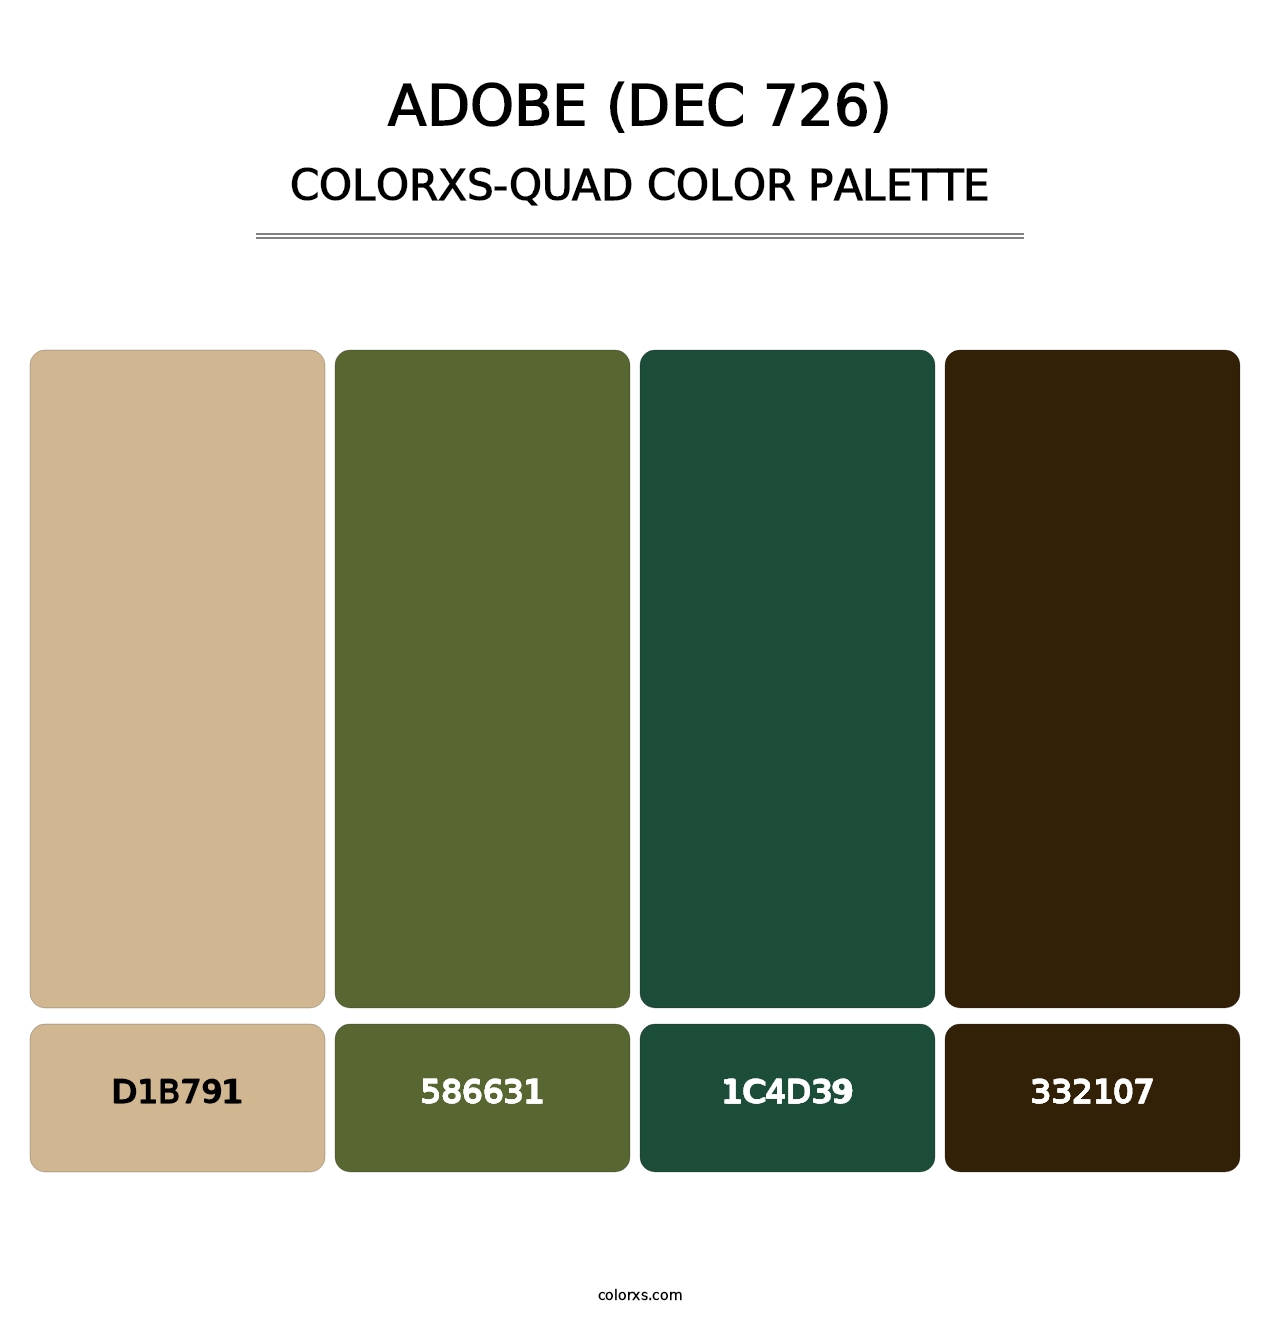 Adobe (DEC 726) - Colorxs Quad Palette